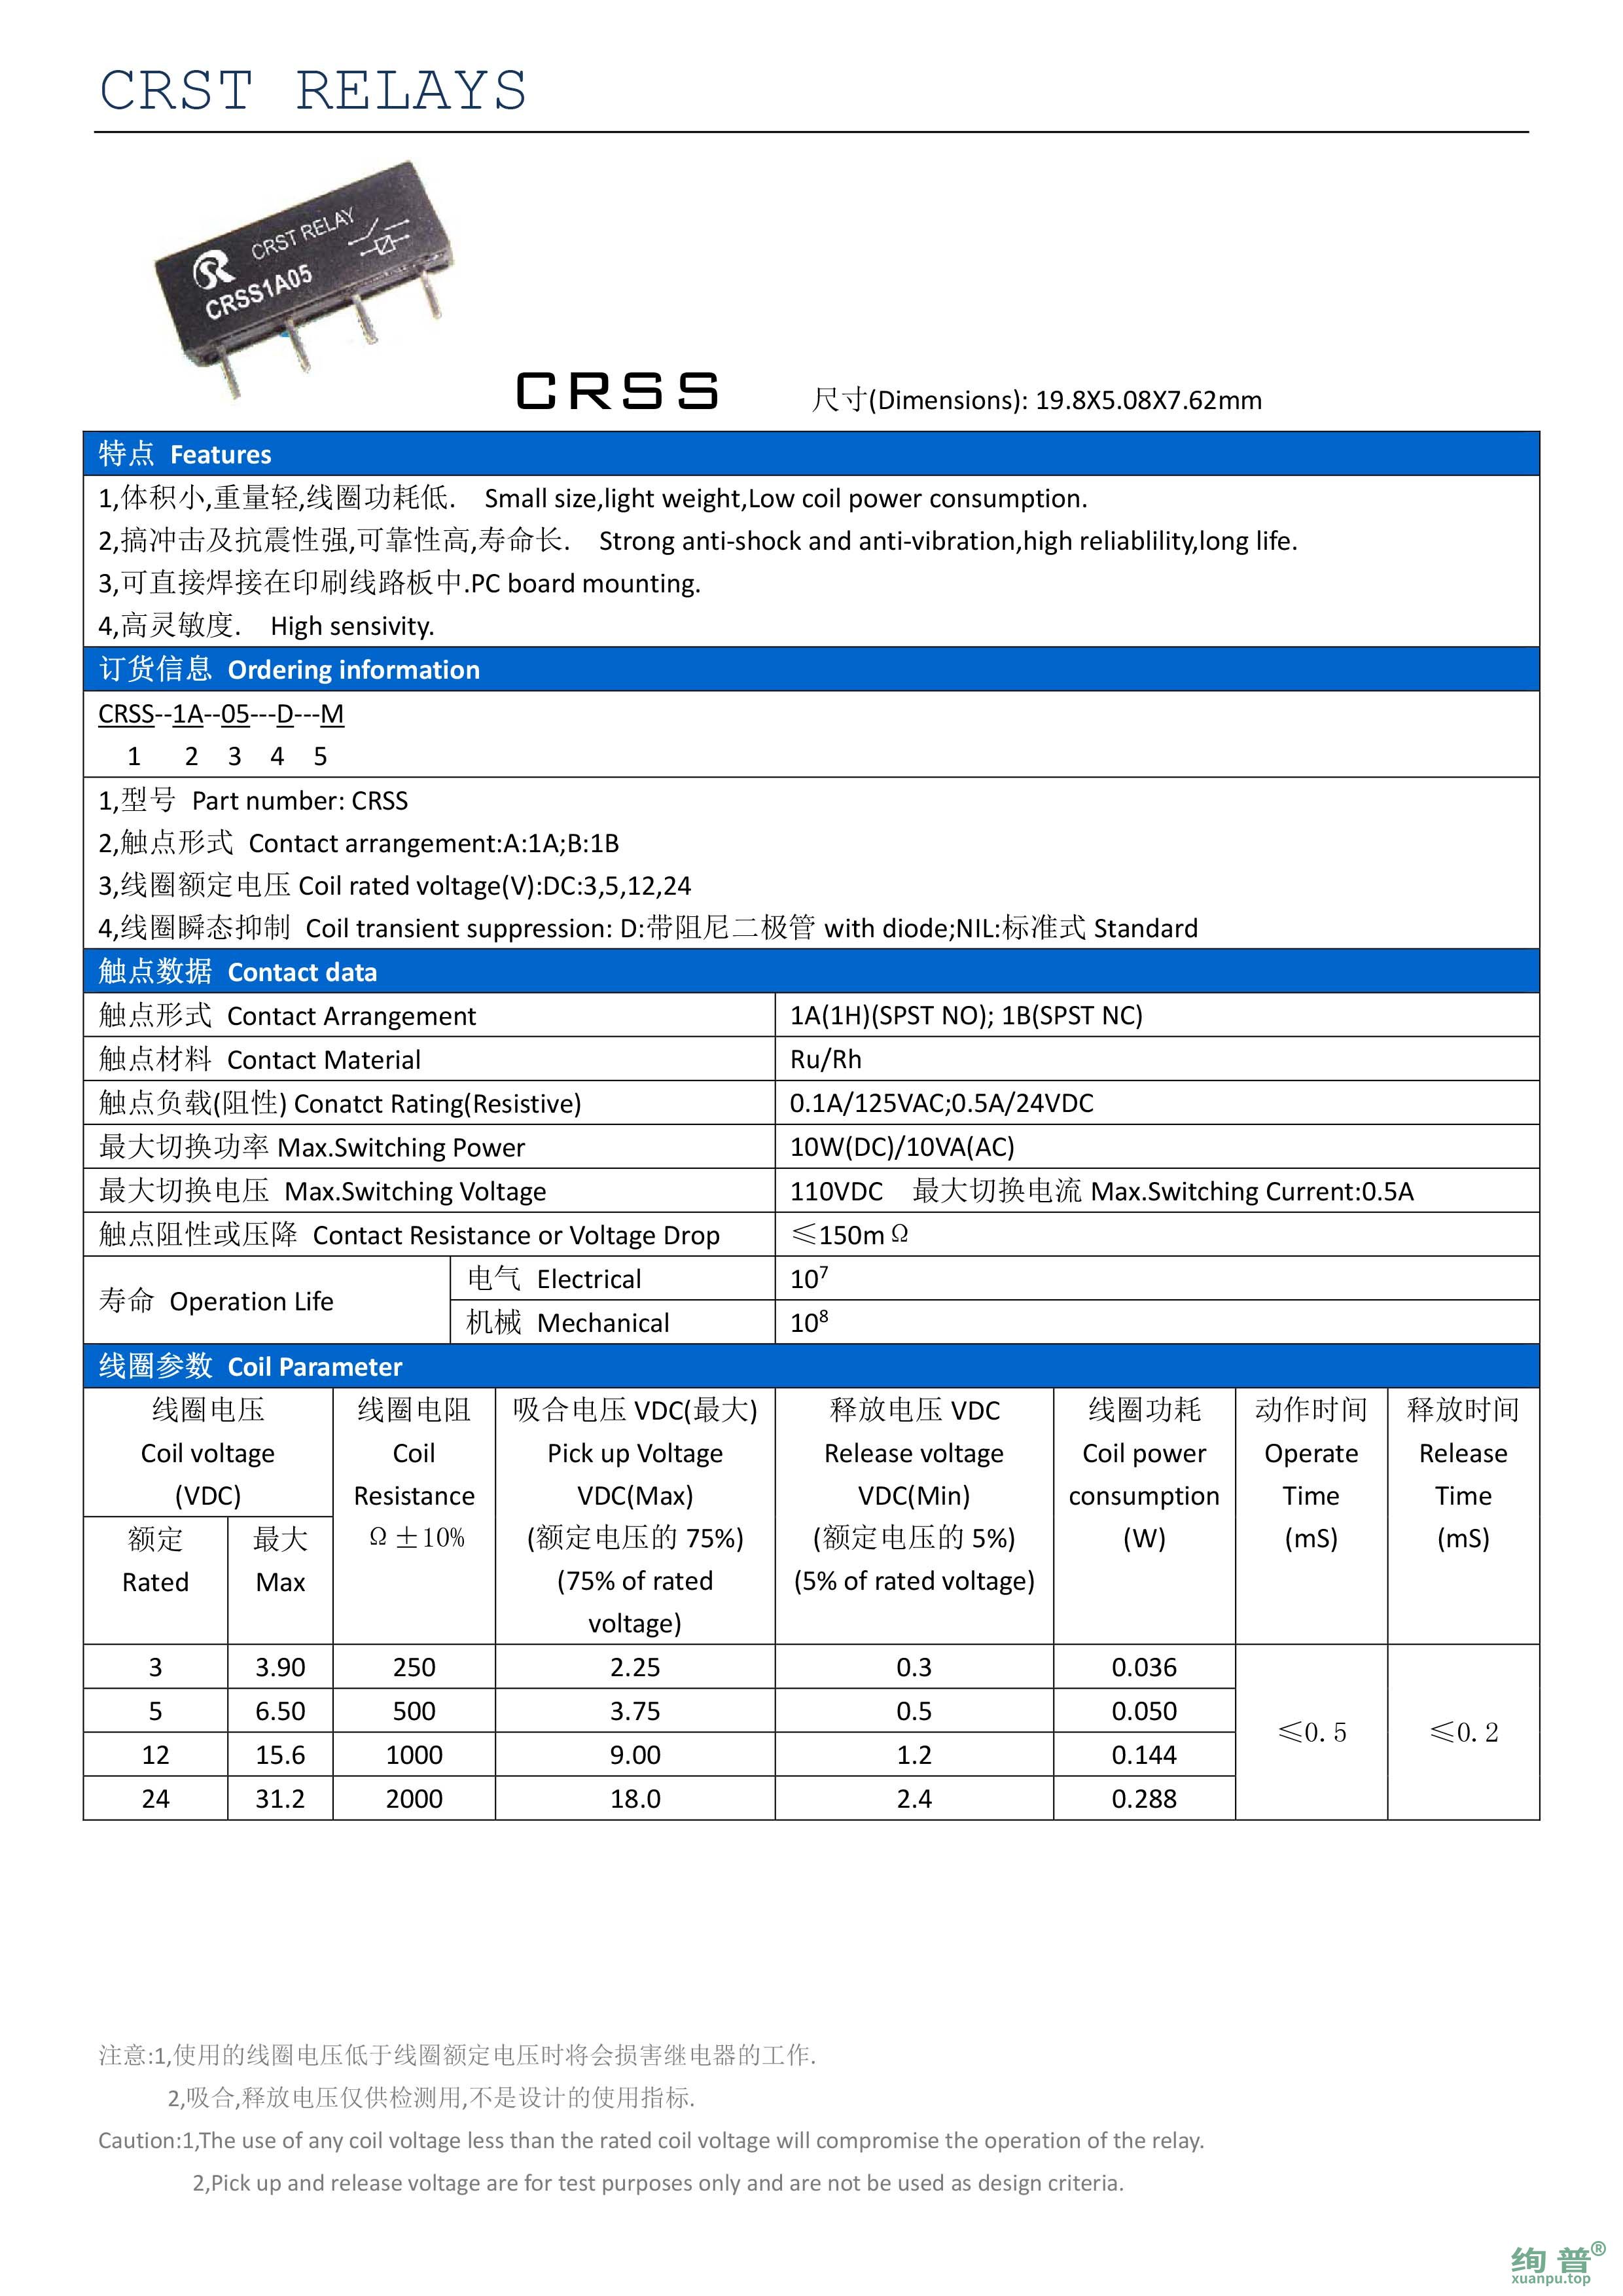 CRSS-1B-24